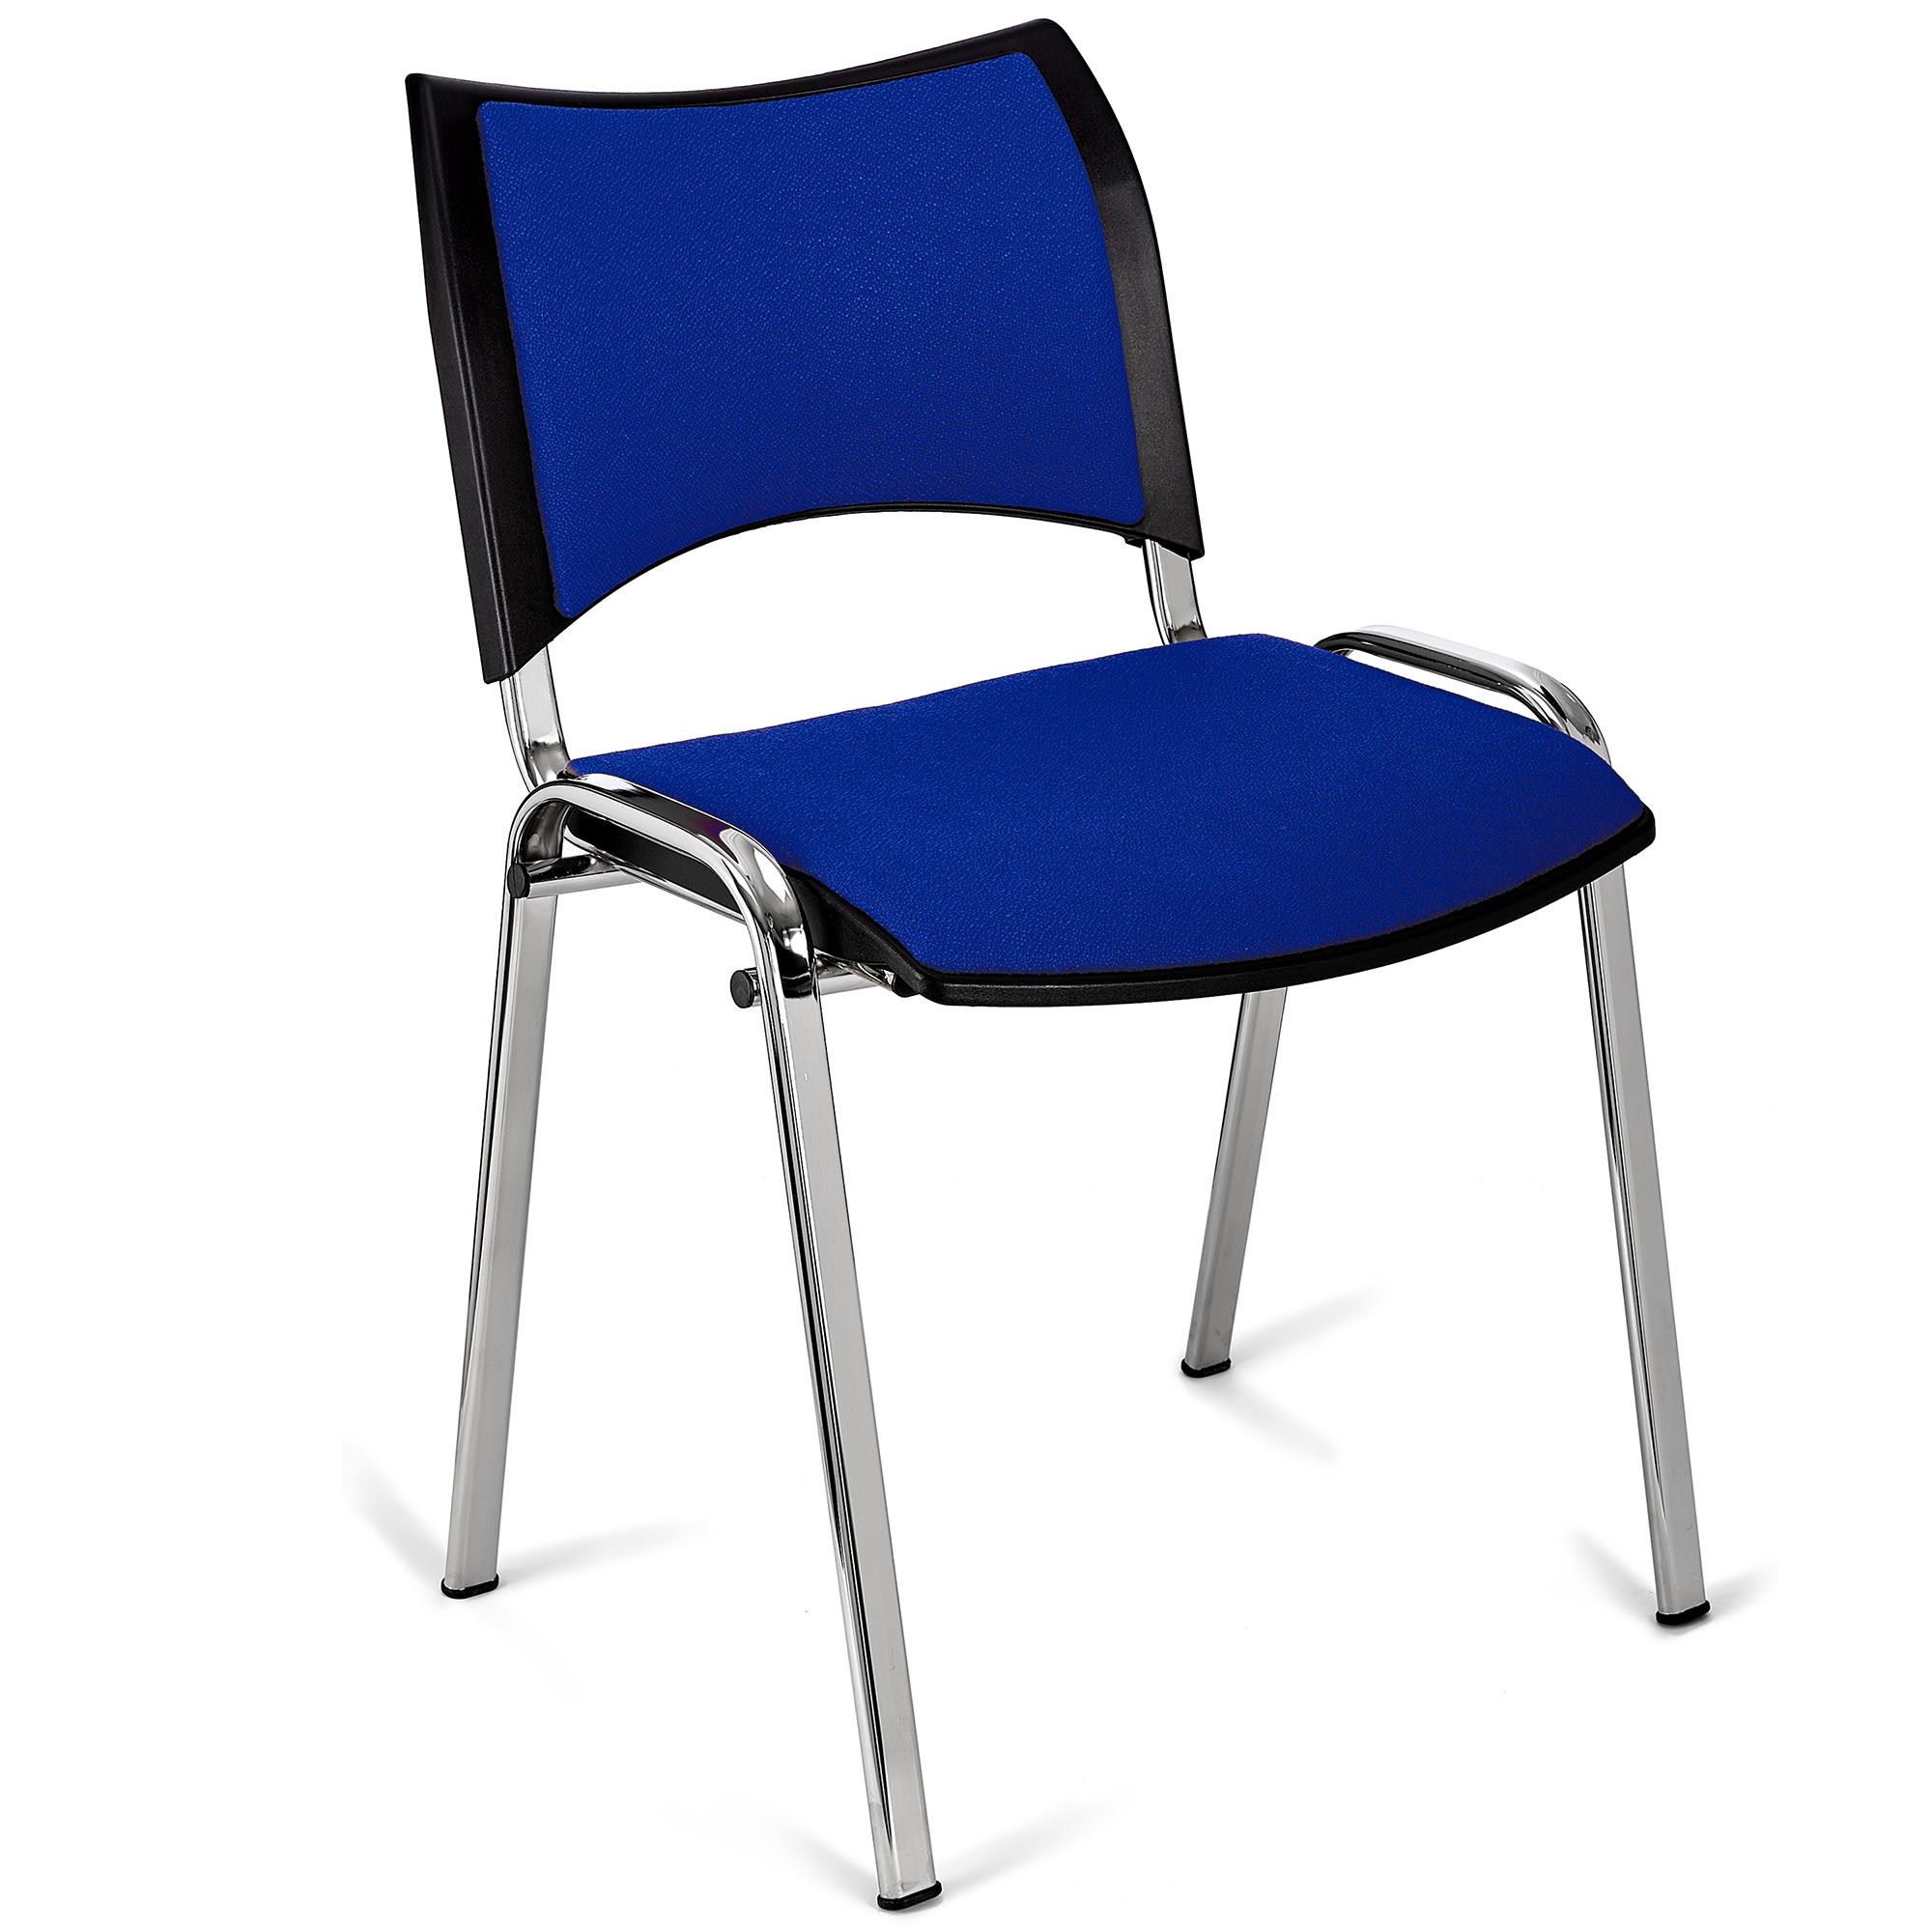 Cadeira de Visita ROMEL, Prática e Empilhável, Pernas Cromadas, Em Pano, Azul